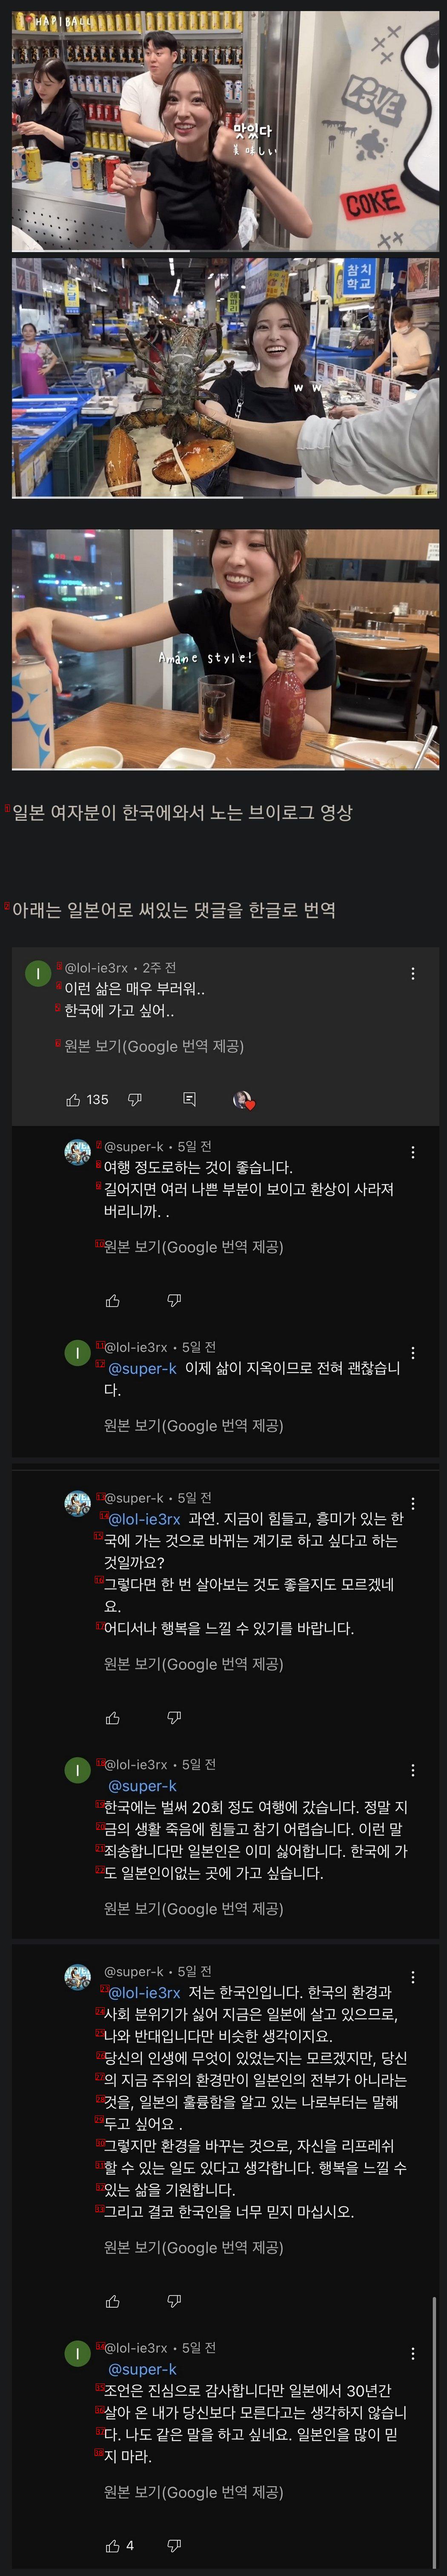 유튜브에서 댓글로 논쟁하는 한국인과 일본인...